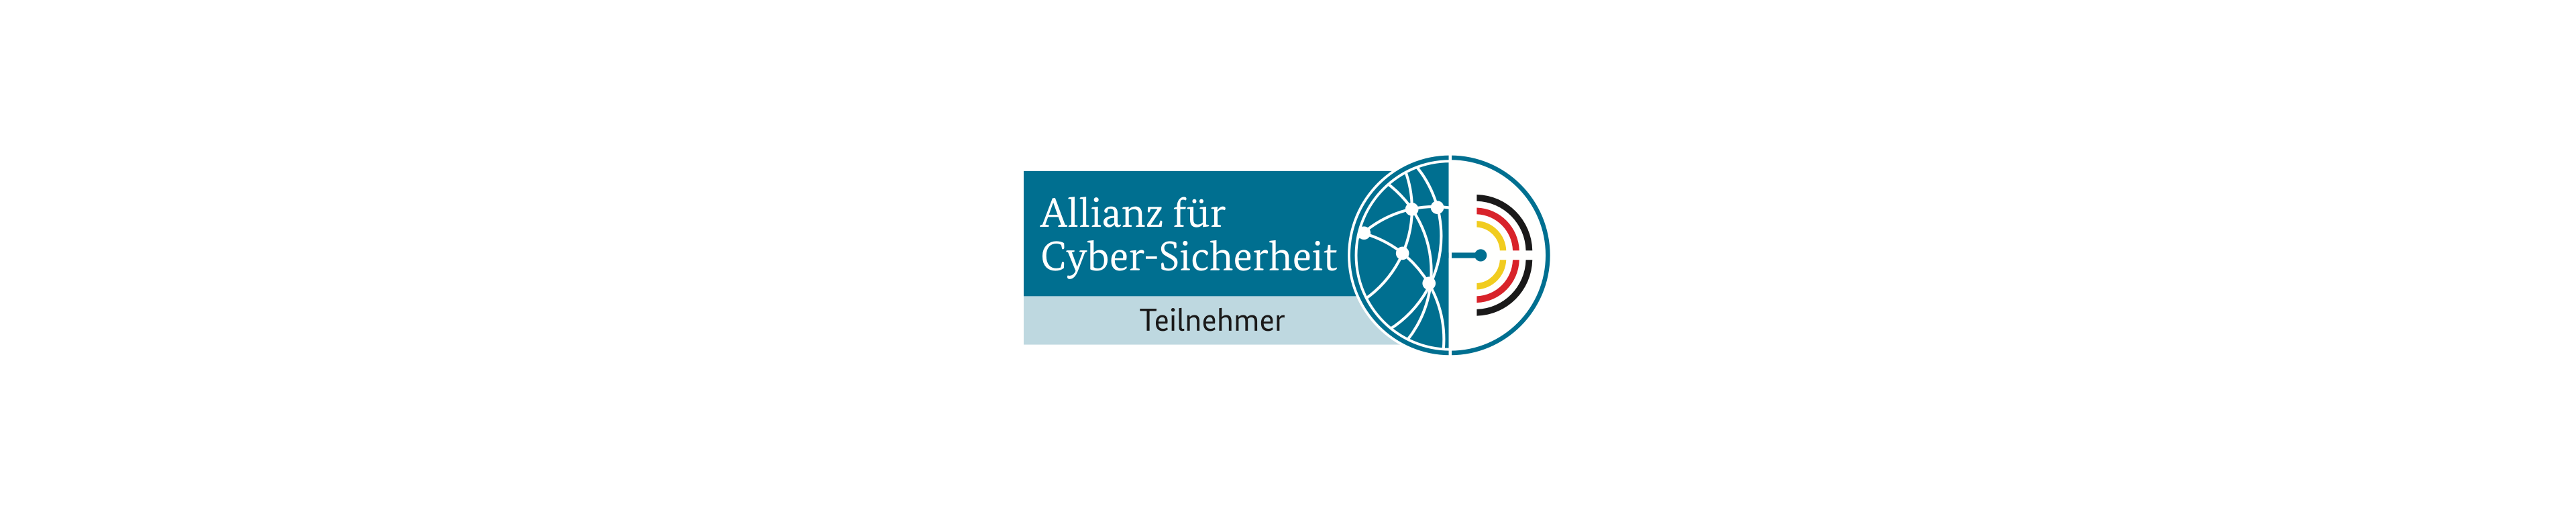 Tresorit Joins the Allianz für Cyber-Sicherheit (ACS) in Germany